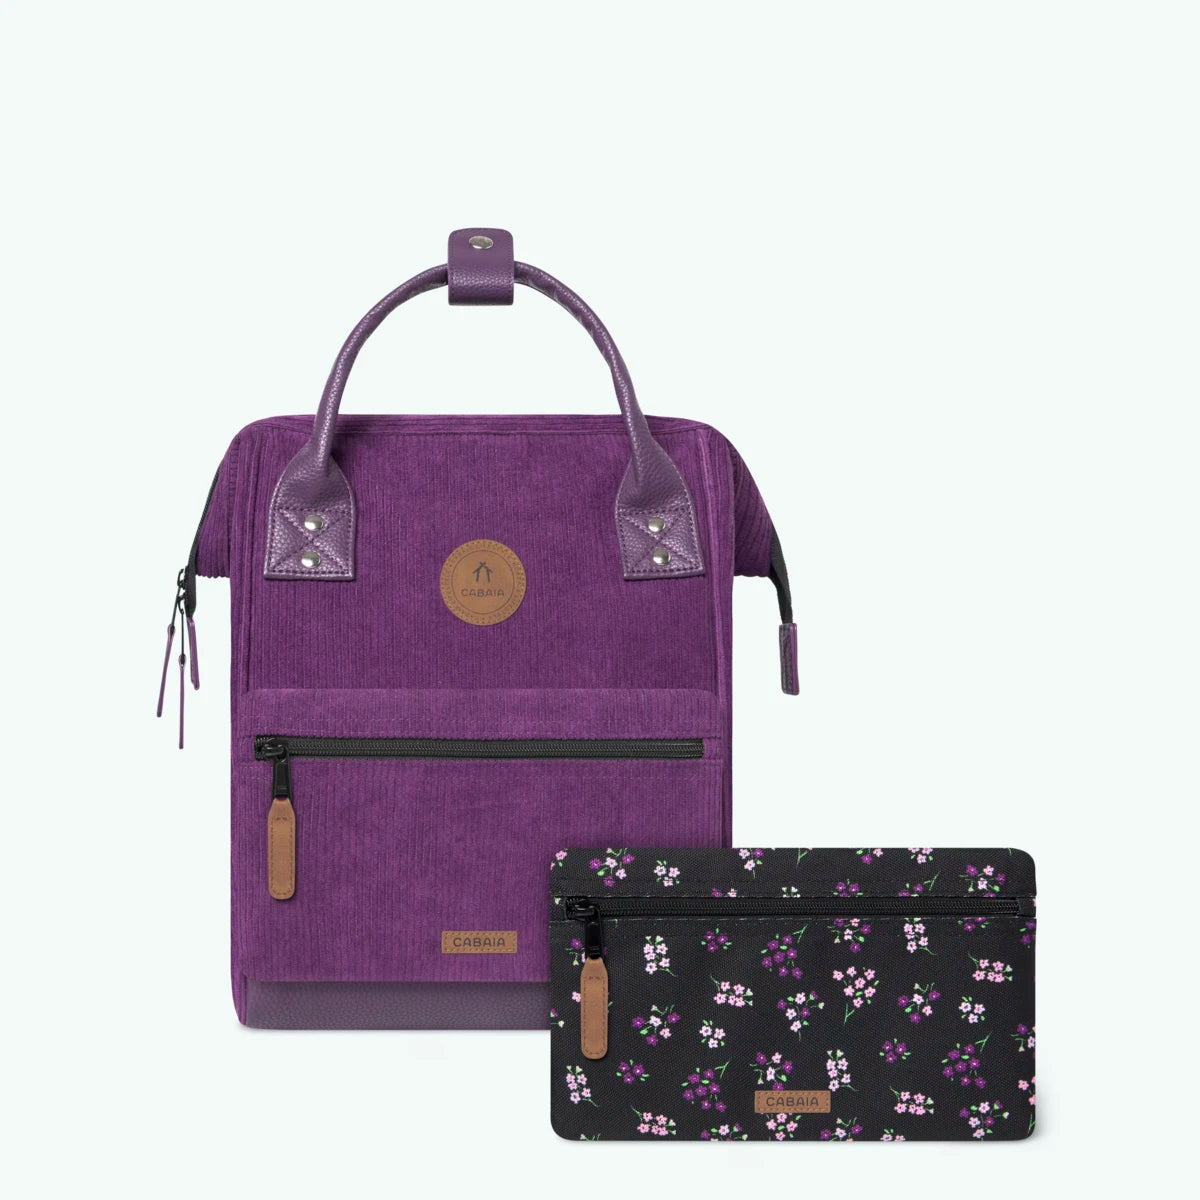 Adventurer purple - Mini - Backpack